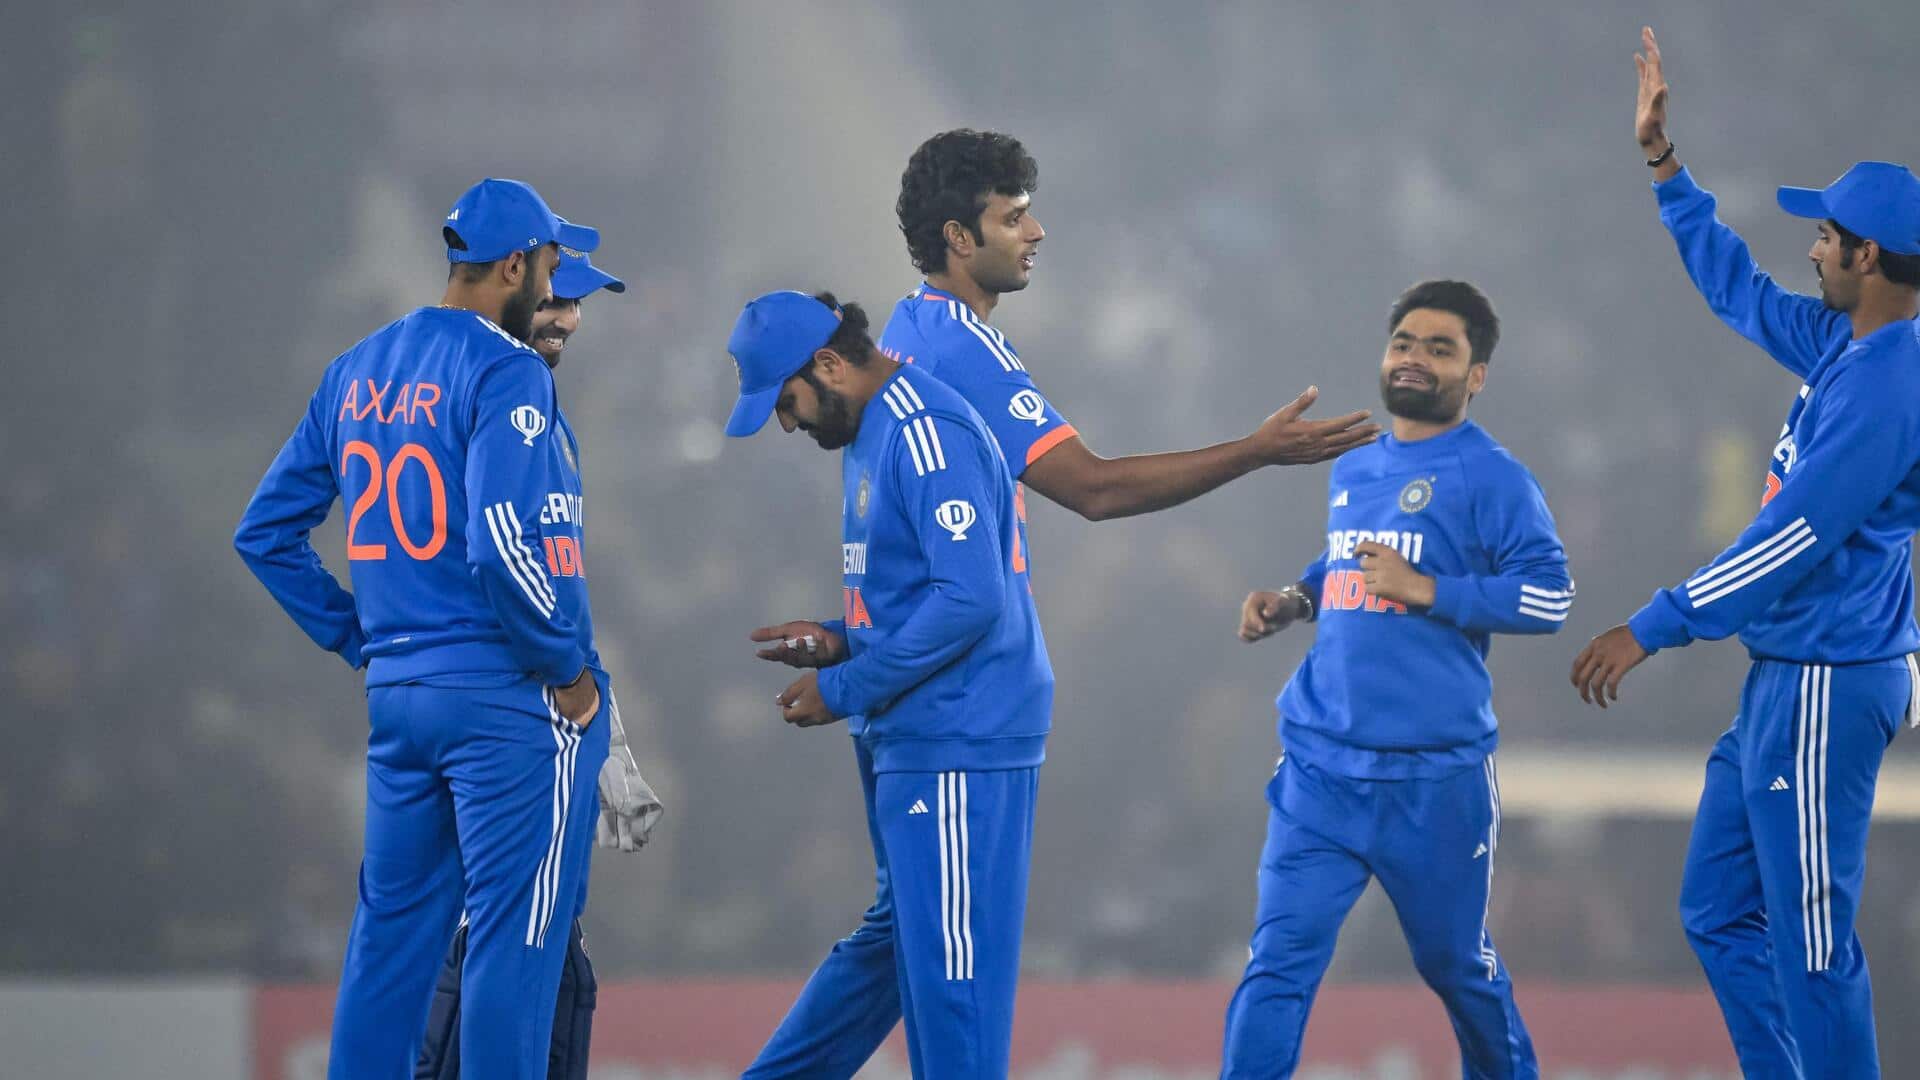 भारत ने पहले टी-20 अंतरराष्ट्रीय में अफगानिस्तान को हराया, ये बने रिकॉर्ड्स